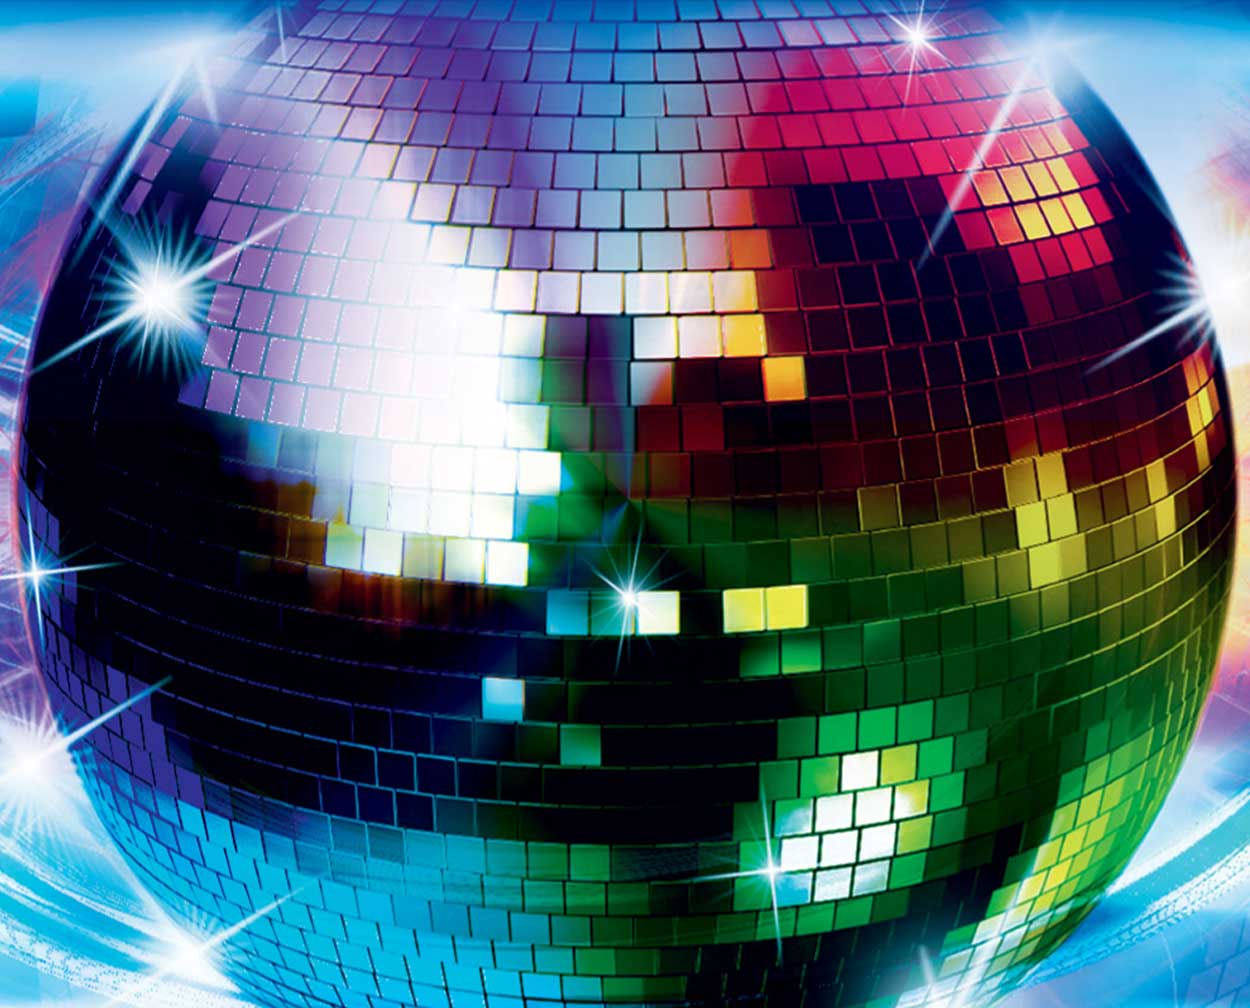 Disco Ball Wallpaper